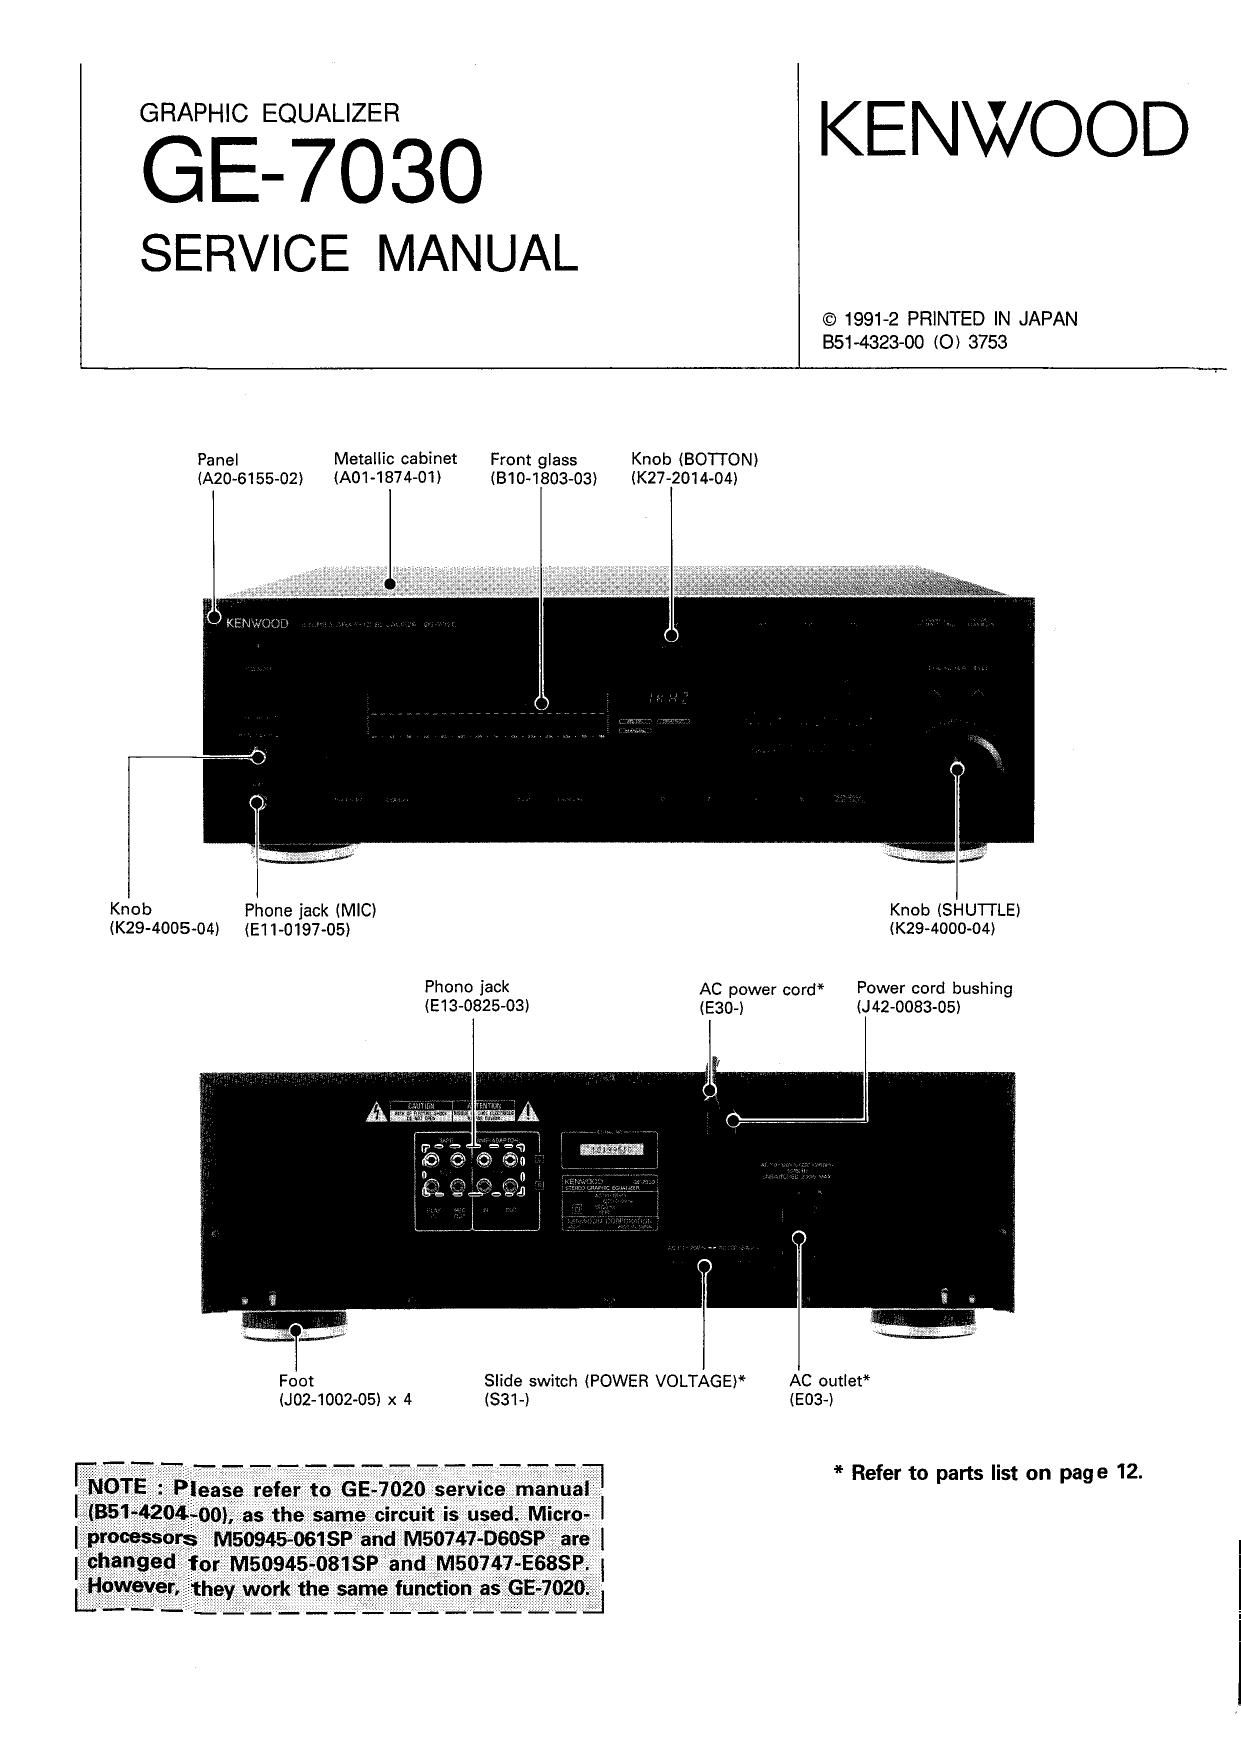 Kenwood GE 7030 Service Manual